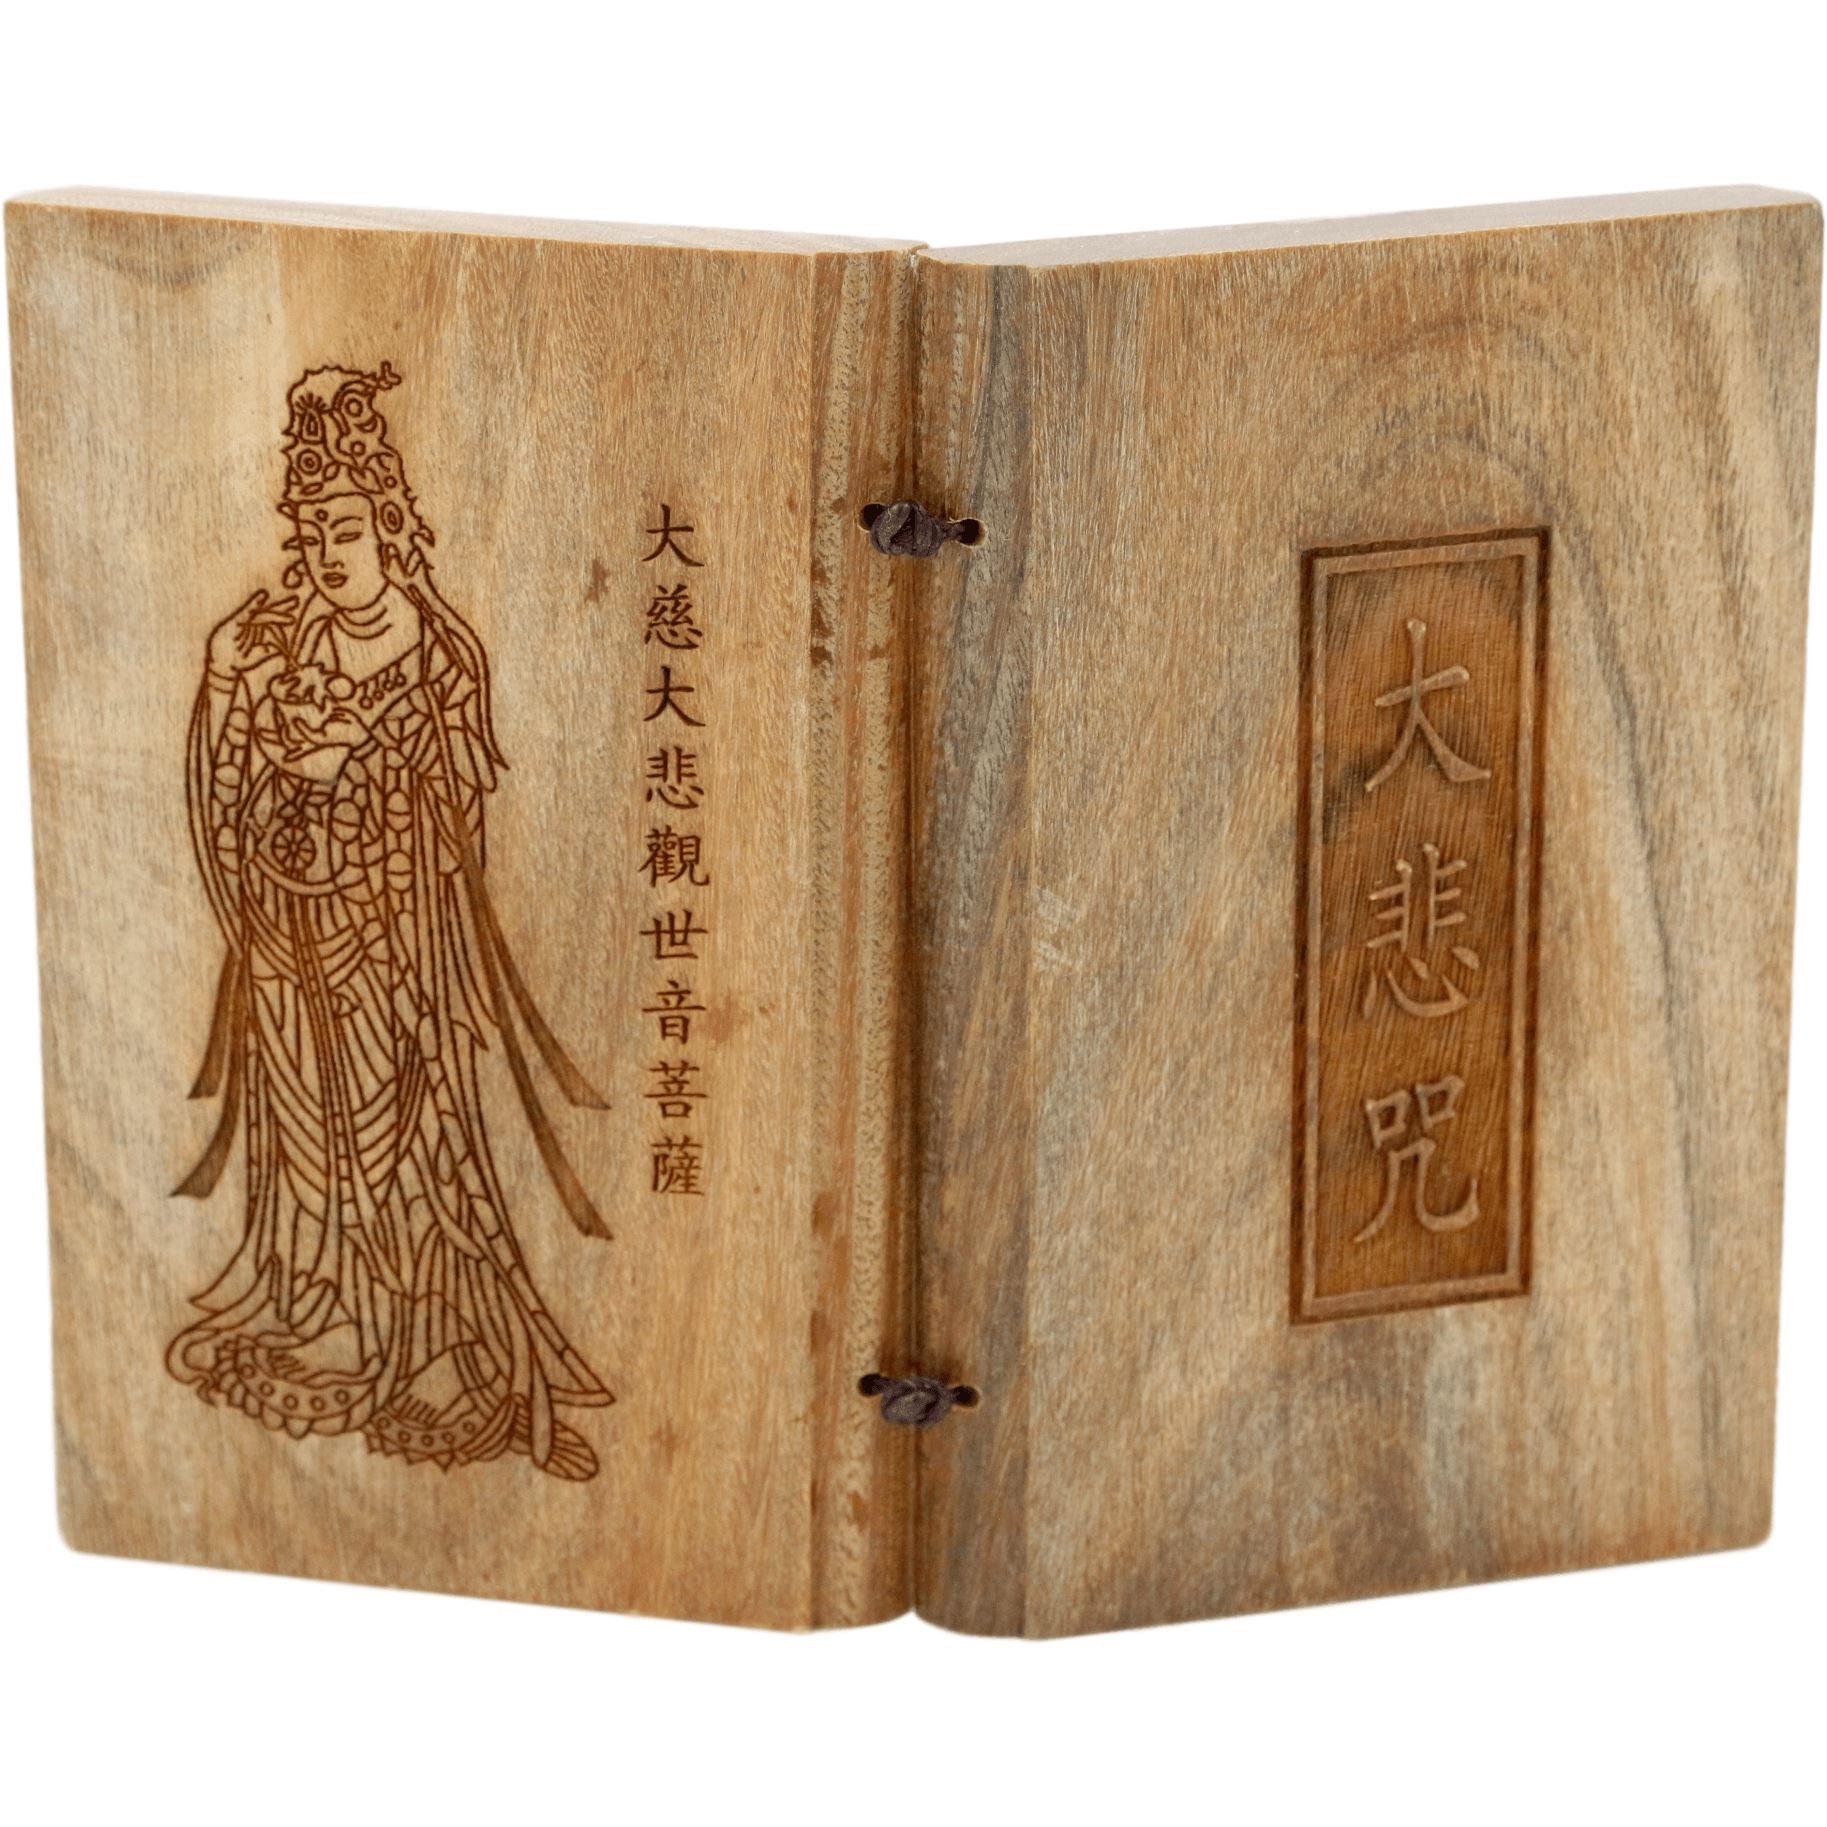 Mantra de la grande compassion (Om maṇi padme hūm) - Tablettes en bois de santal